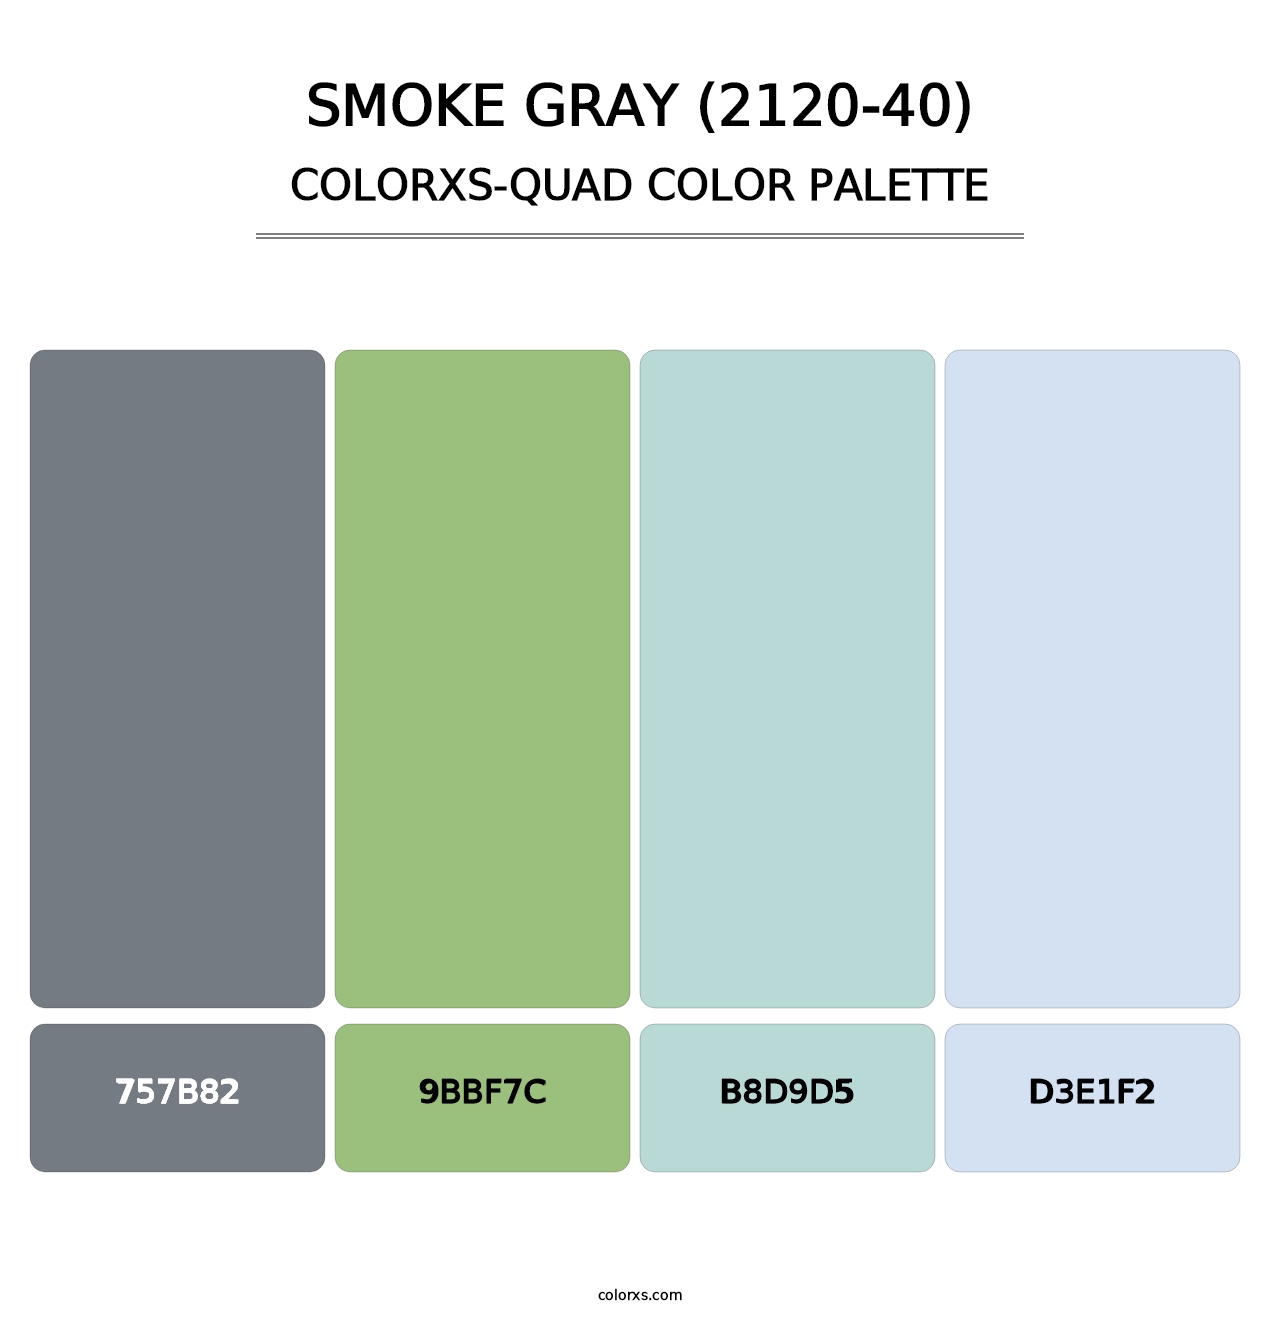 Smoke Gray (2120-40) - Colorxs Quad Palette